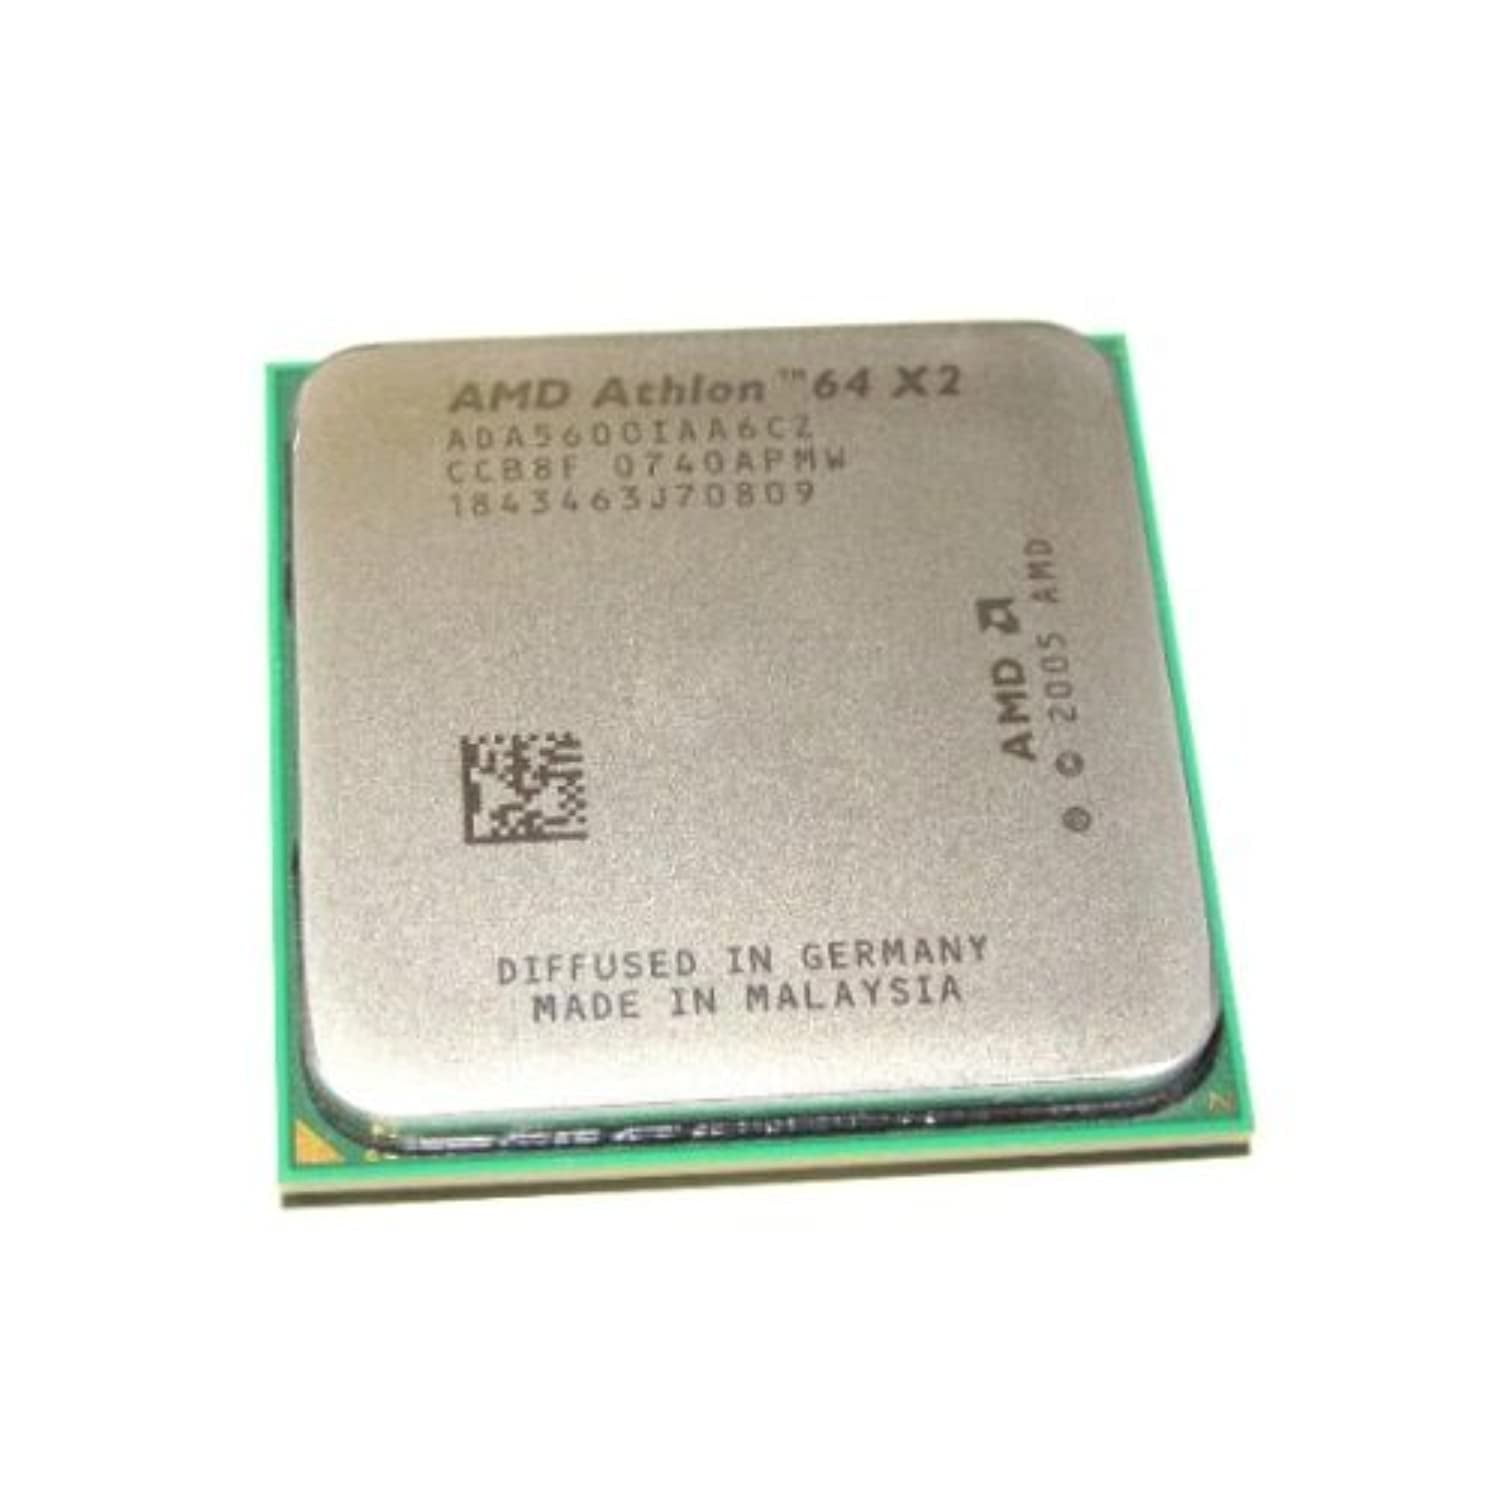 Athlon 650. AMD Athlon 64 x2 ada5600iaa6cz. AMD Athlon 64 x2 5000+. AMD Athlon 64 2001 процессор. AMD Athlon 64 x2 корпус.